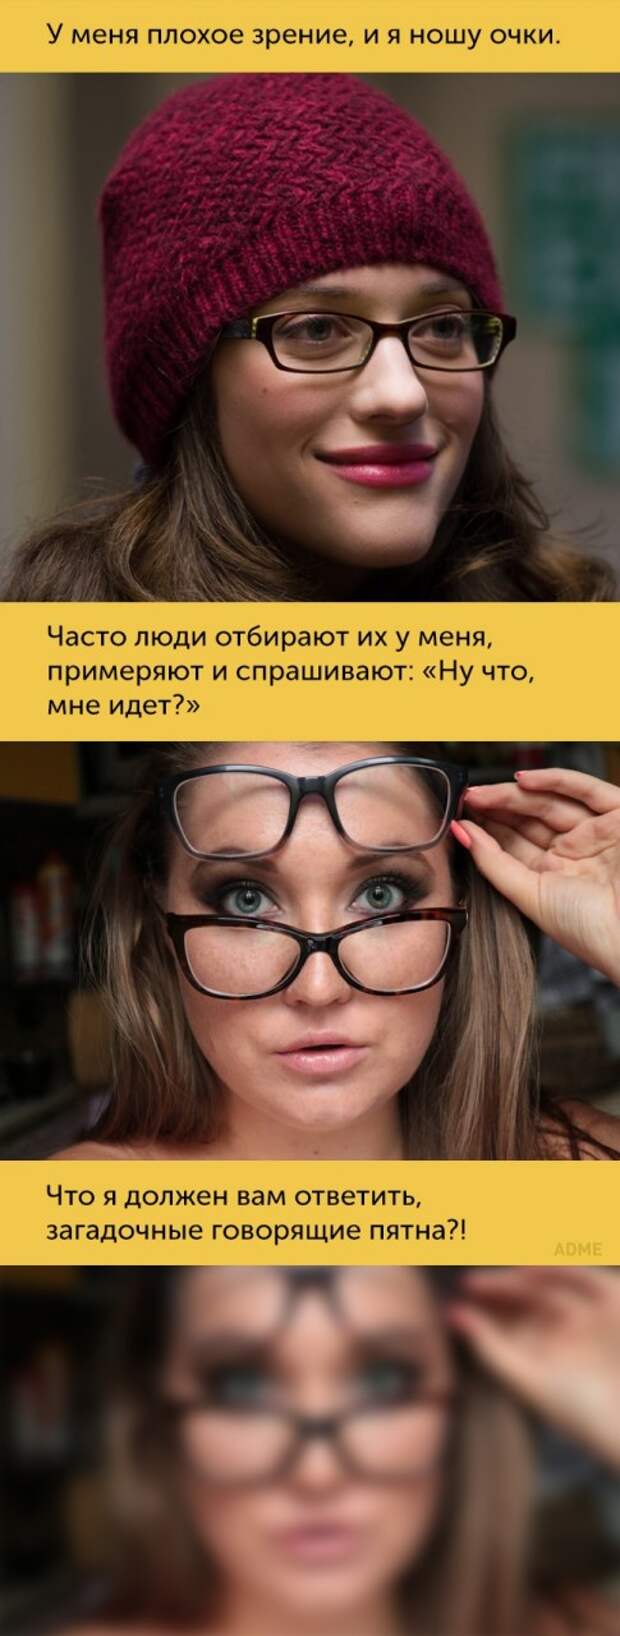 Мемы про людей с плохим зрением